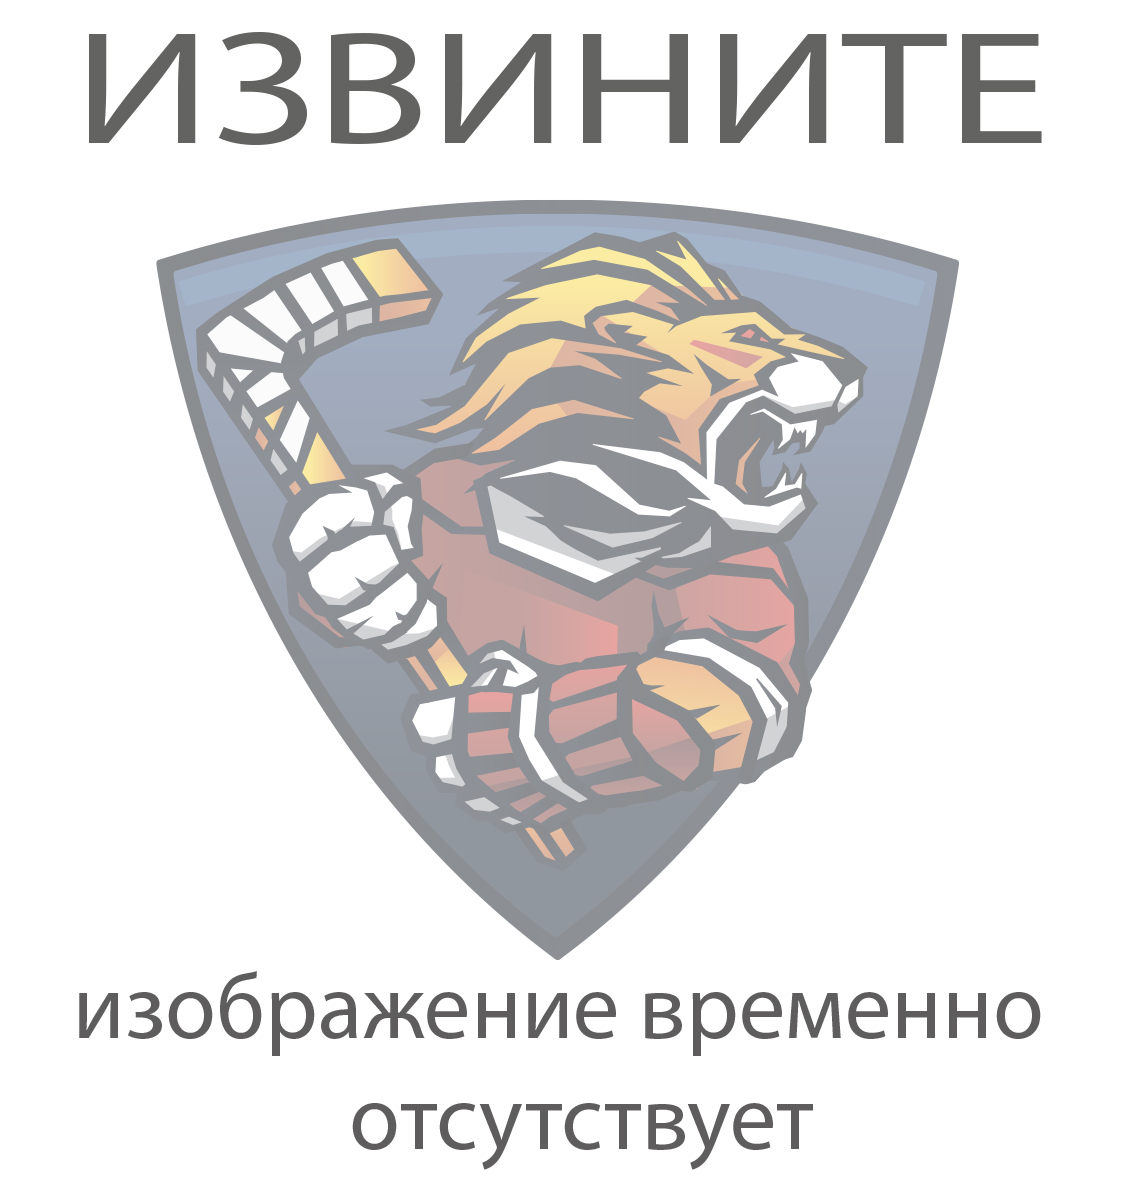 Мешок спортивный FLAME с логотипом ХК ЦСКА